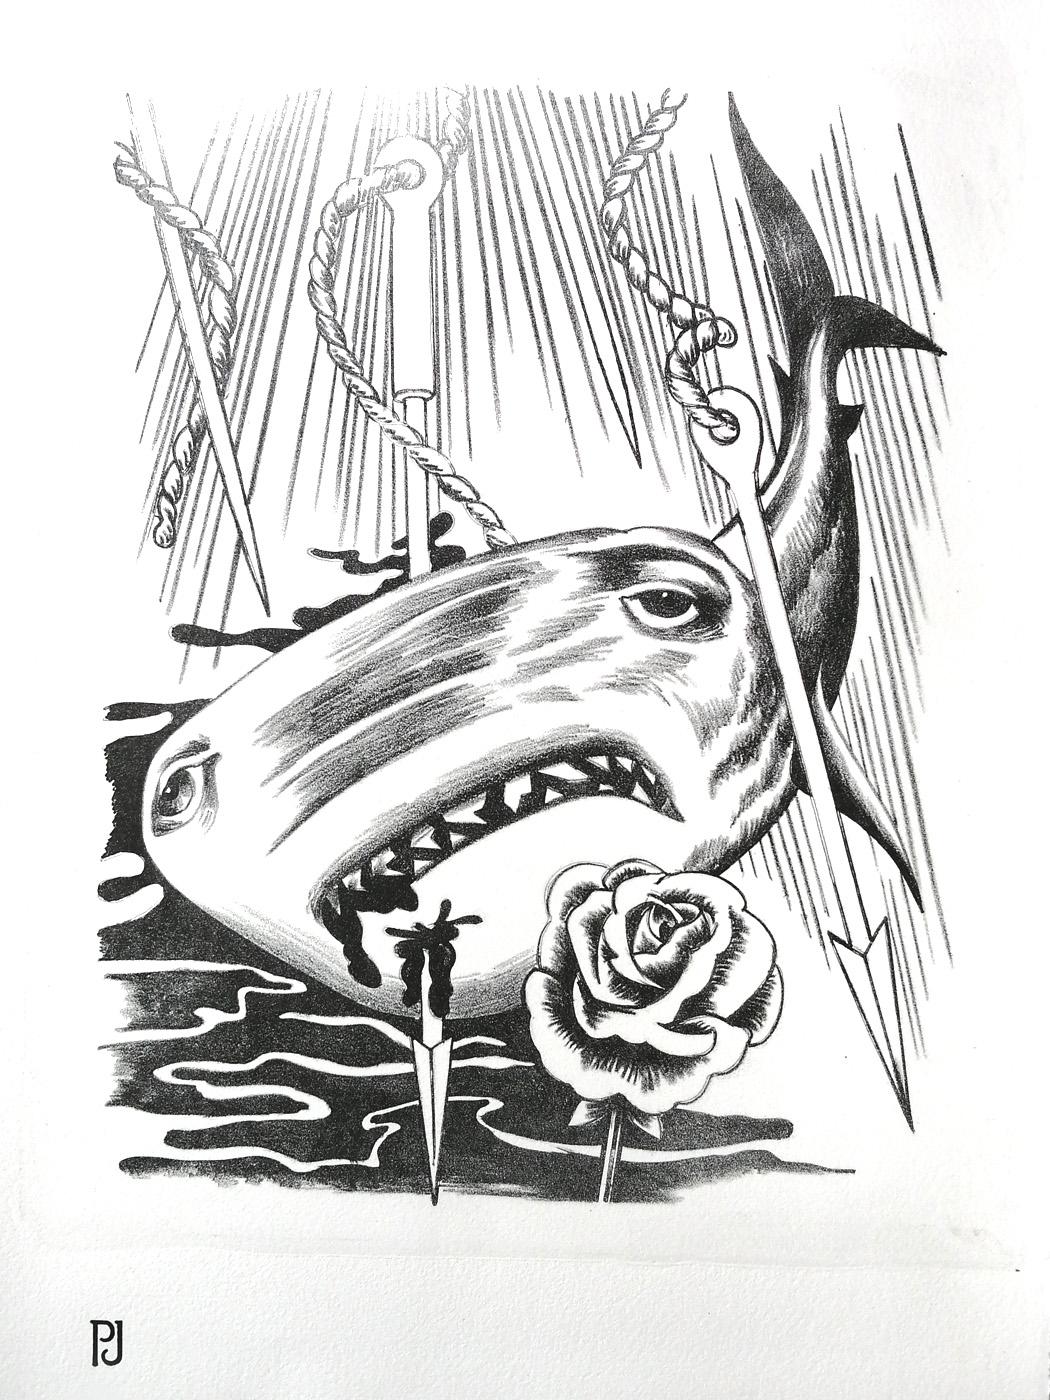 Impression lithographique / encre noire imprimée sur papier JOHANOT 240gr.
Inversion des rôles dans cette version mélancolique : un requin transpercé de harpons pleure des larmes de sang sur une rose de cimetière.

Références utilisées pour ce